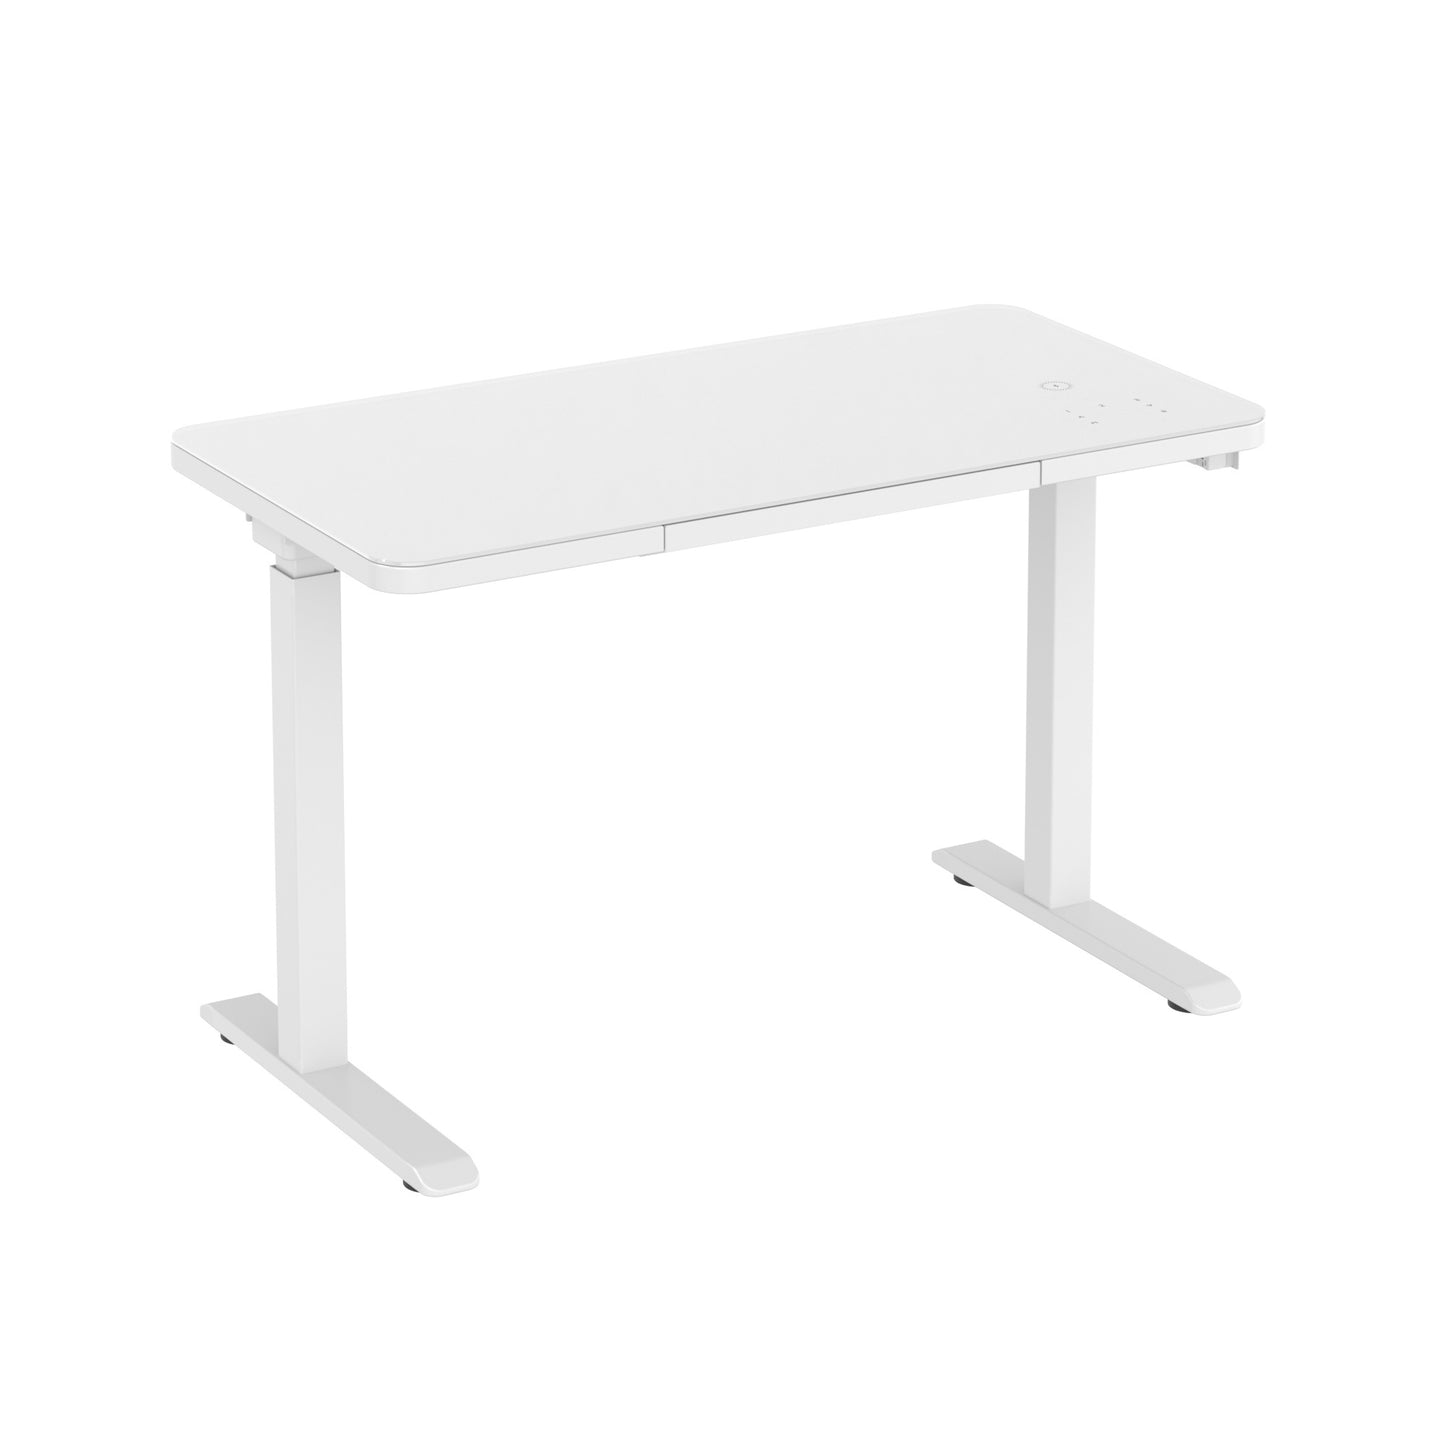 Glass tabletop standing desk
White